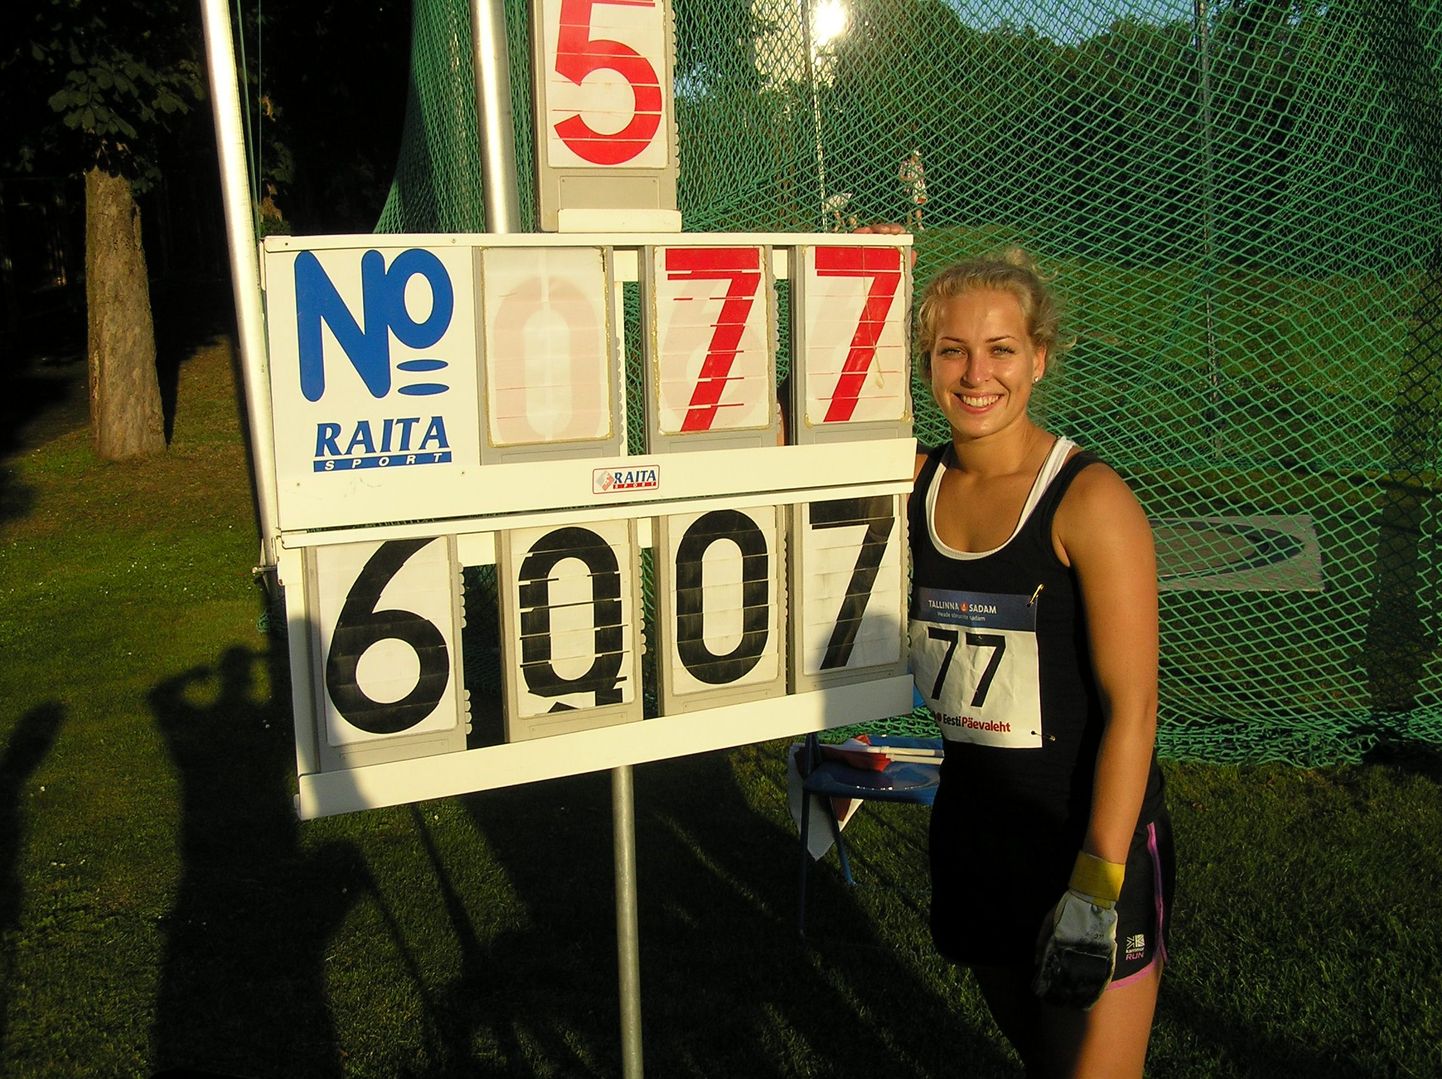 Kati Ojaloo võitis vasaraheite uue isikliku rekordiga.